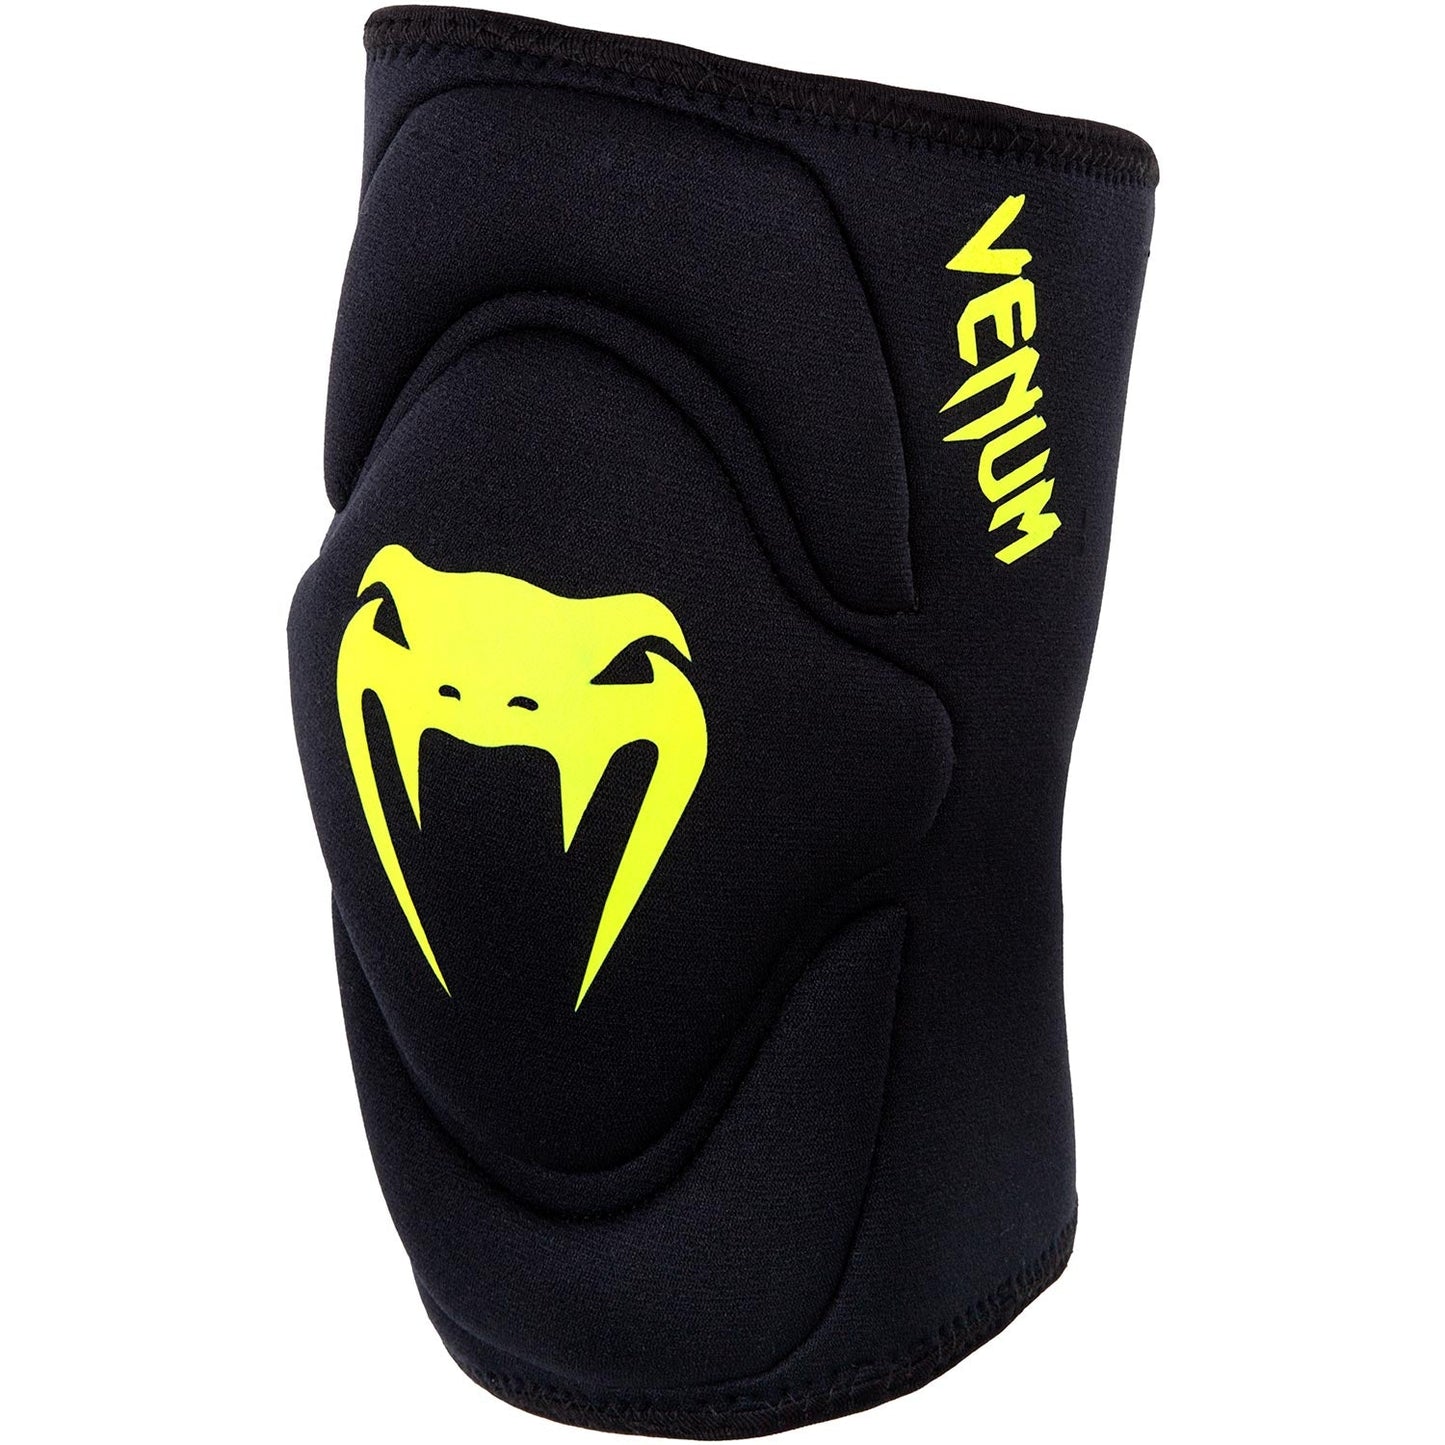 Venum Kontact Gel Knee Pad - Black/Neo Yellow